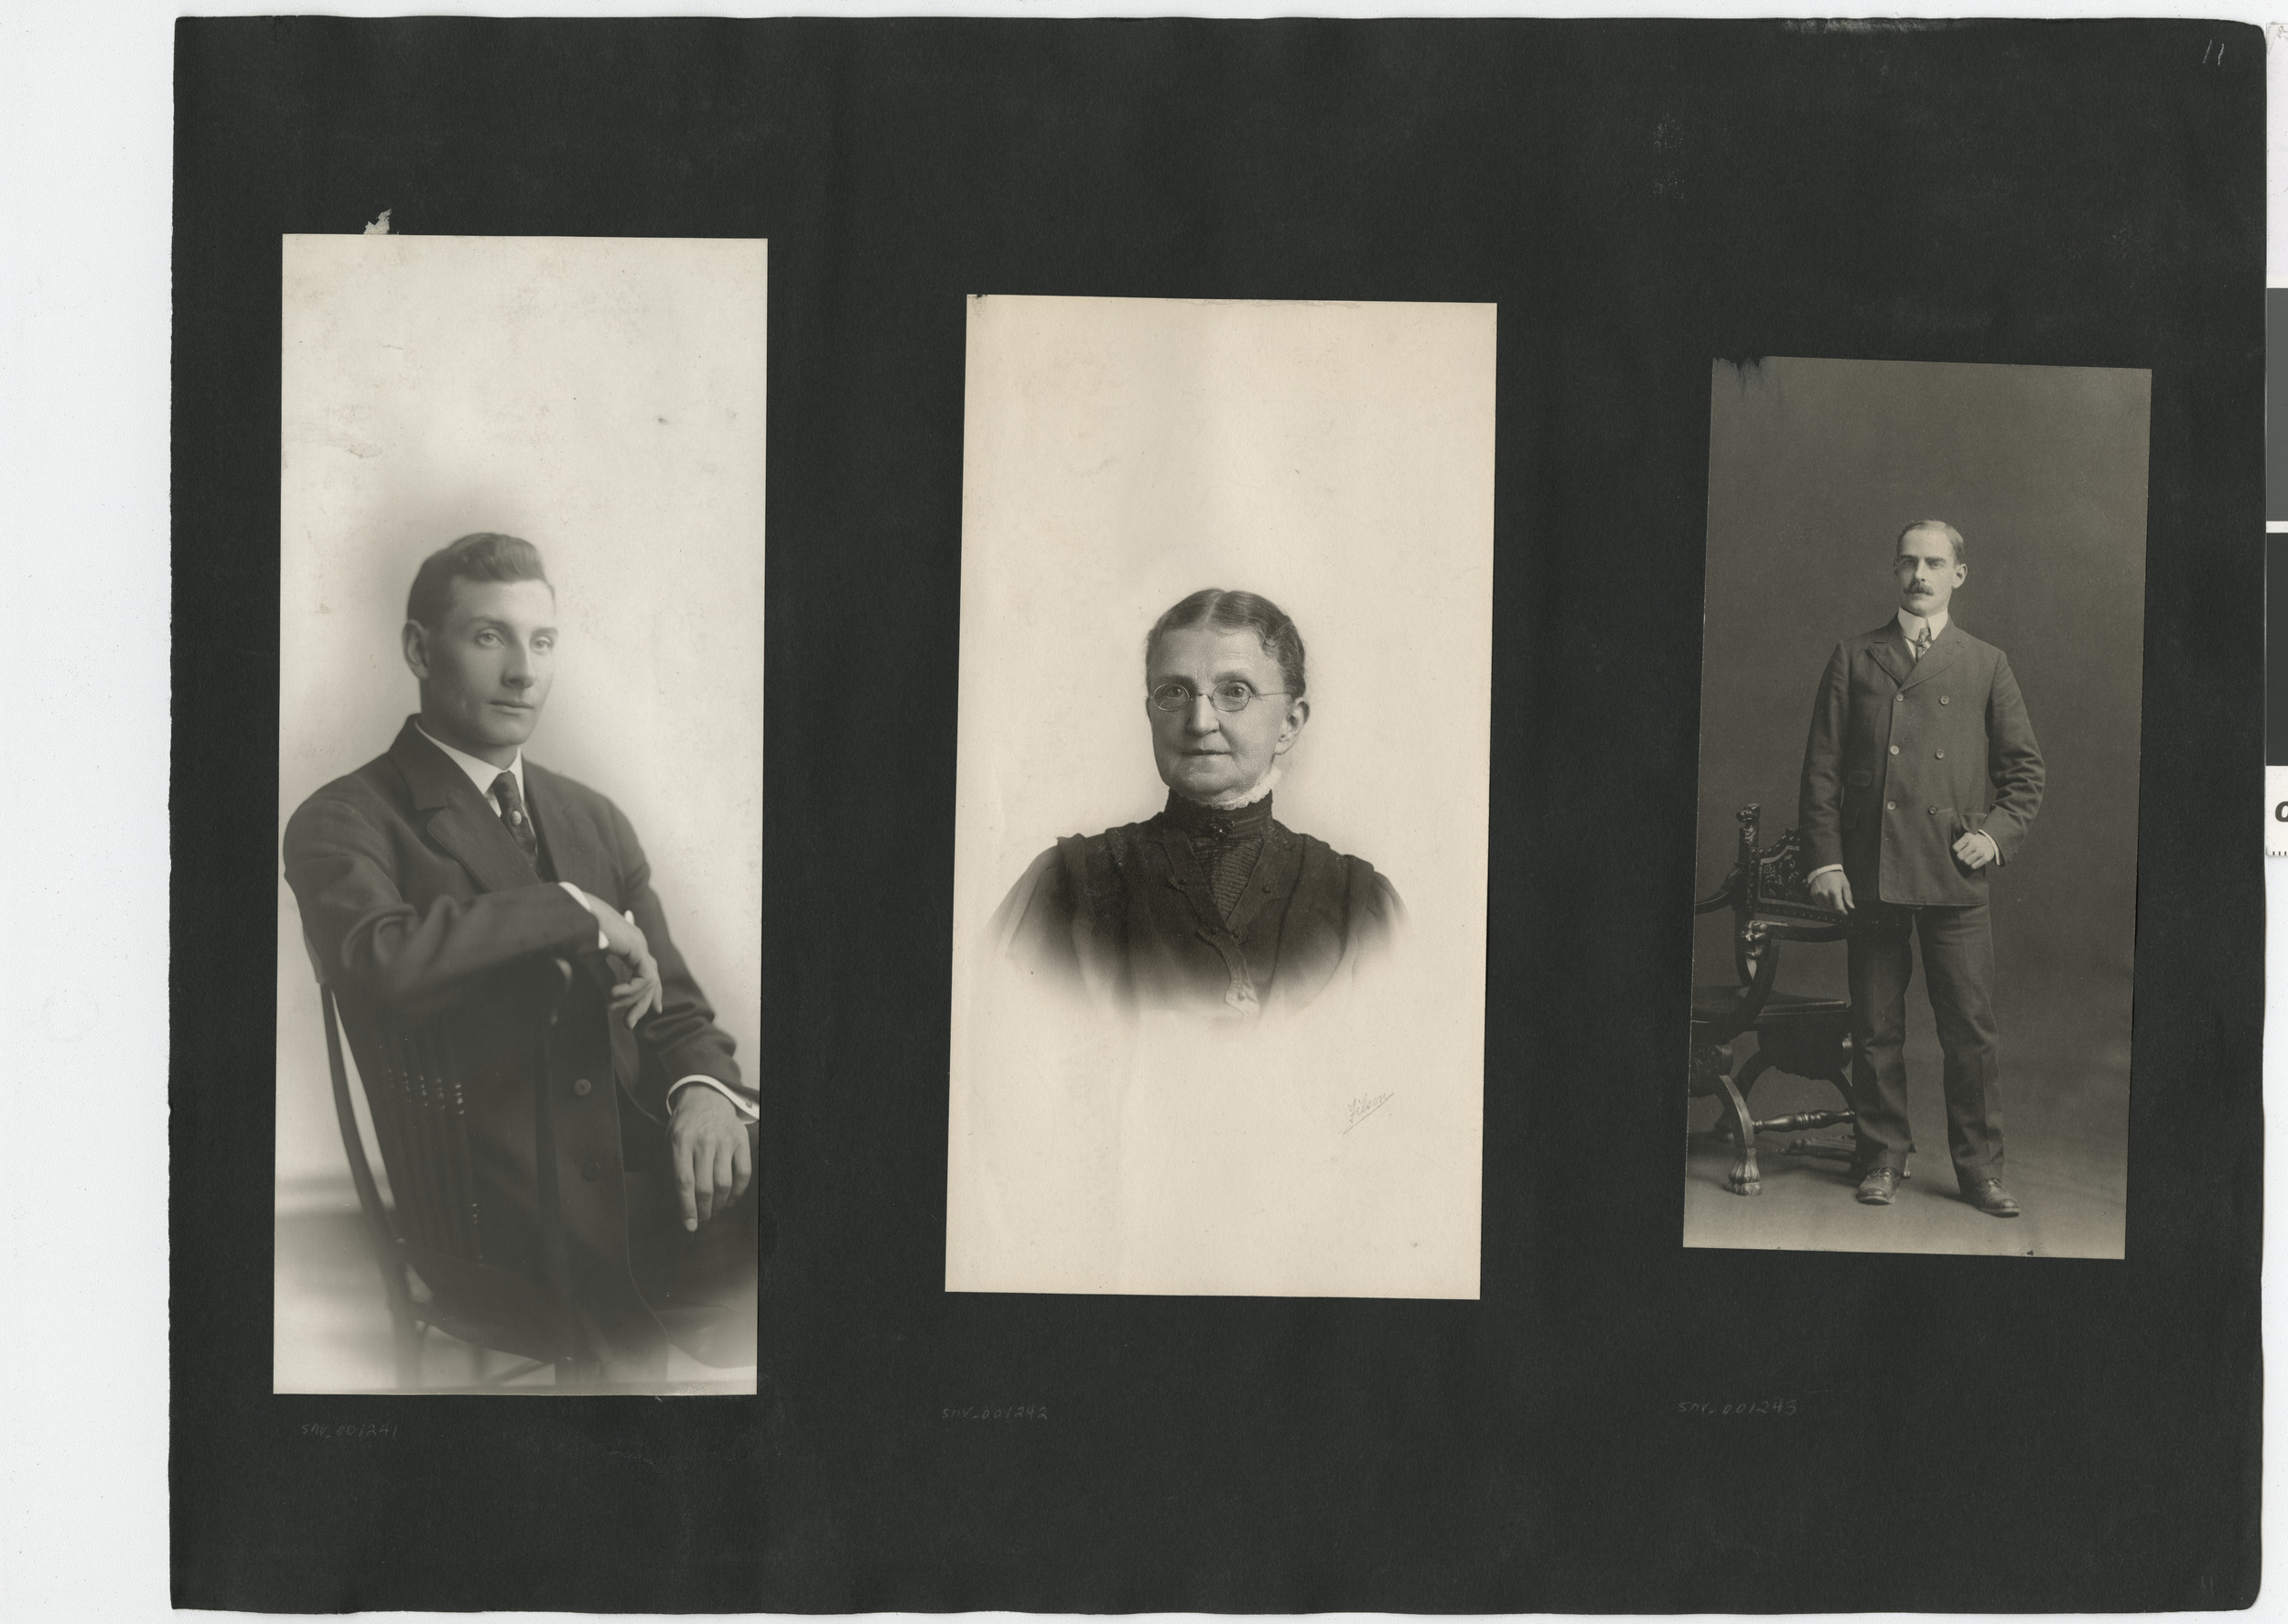 Photograph album 2, Ferron-Bracken Collection, circa 1905-1935, page 77